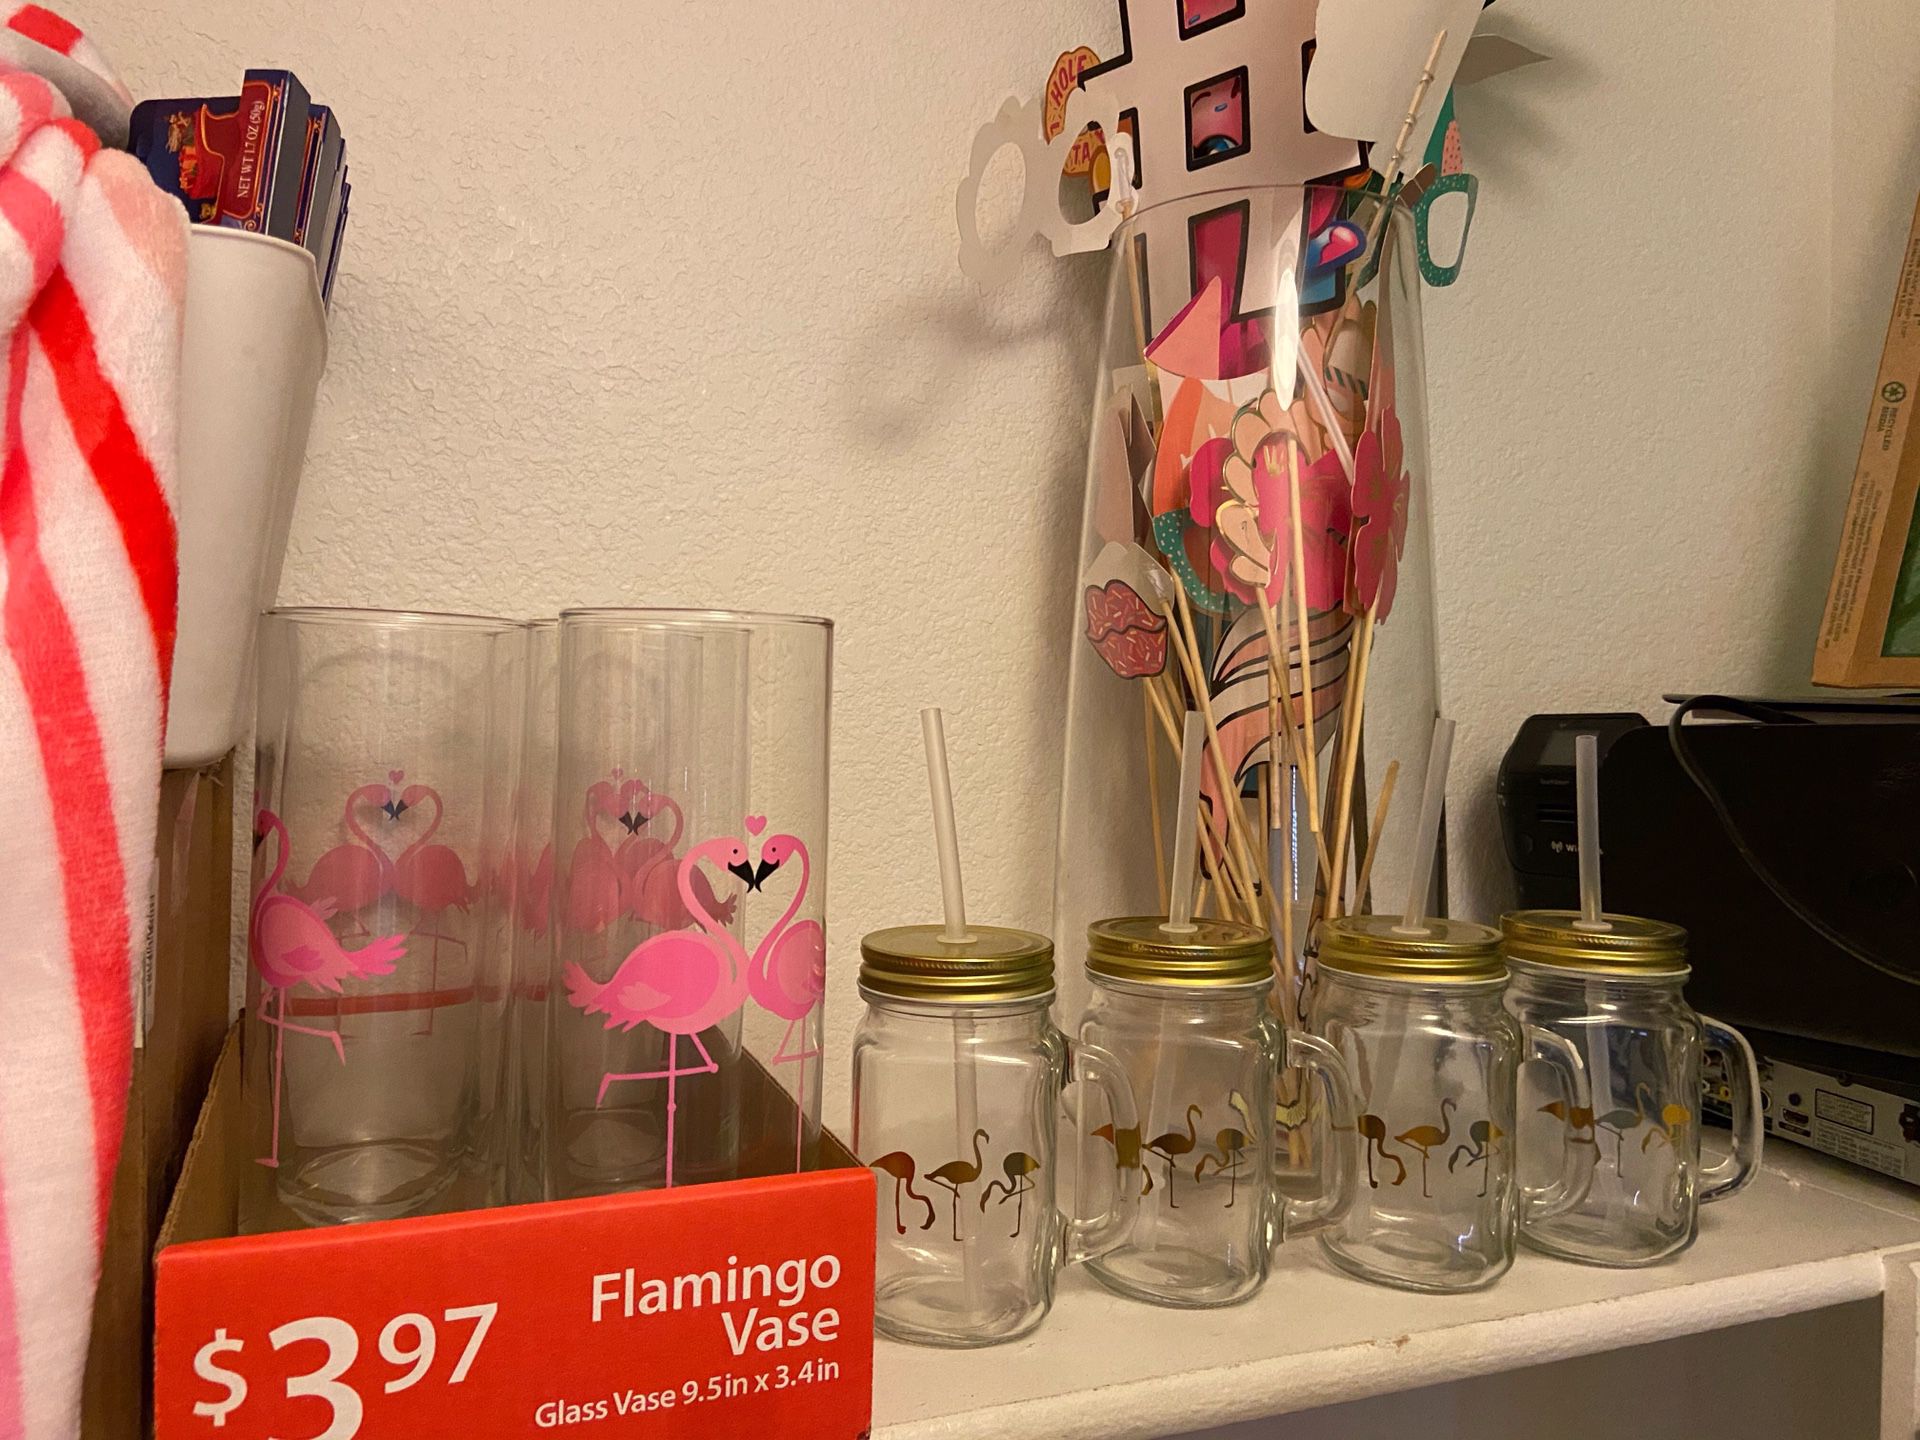 Luau / Flamingo theme party items.